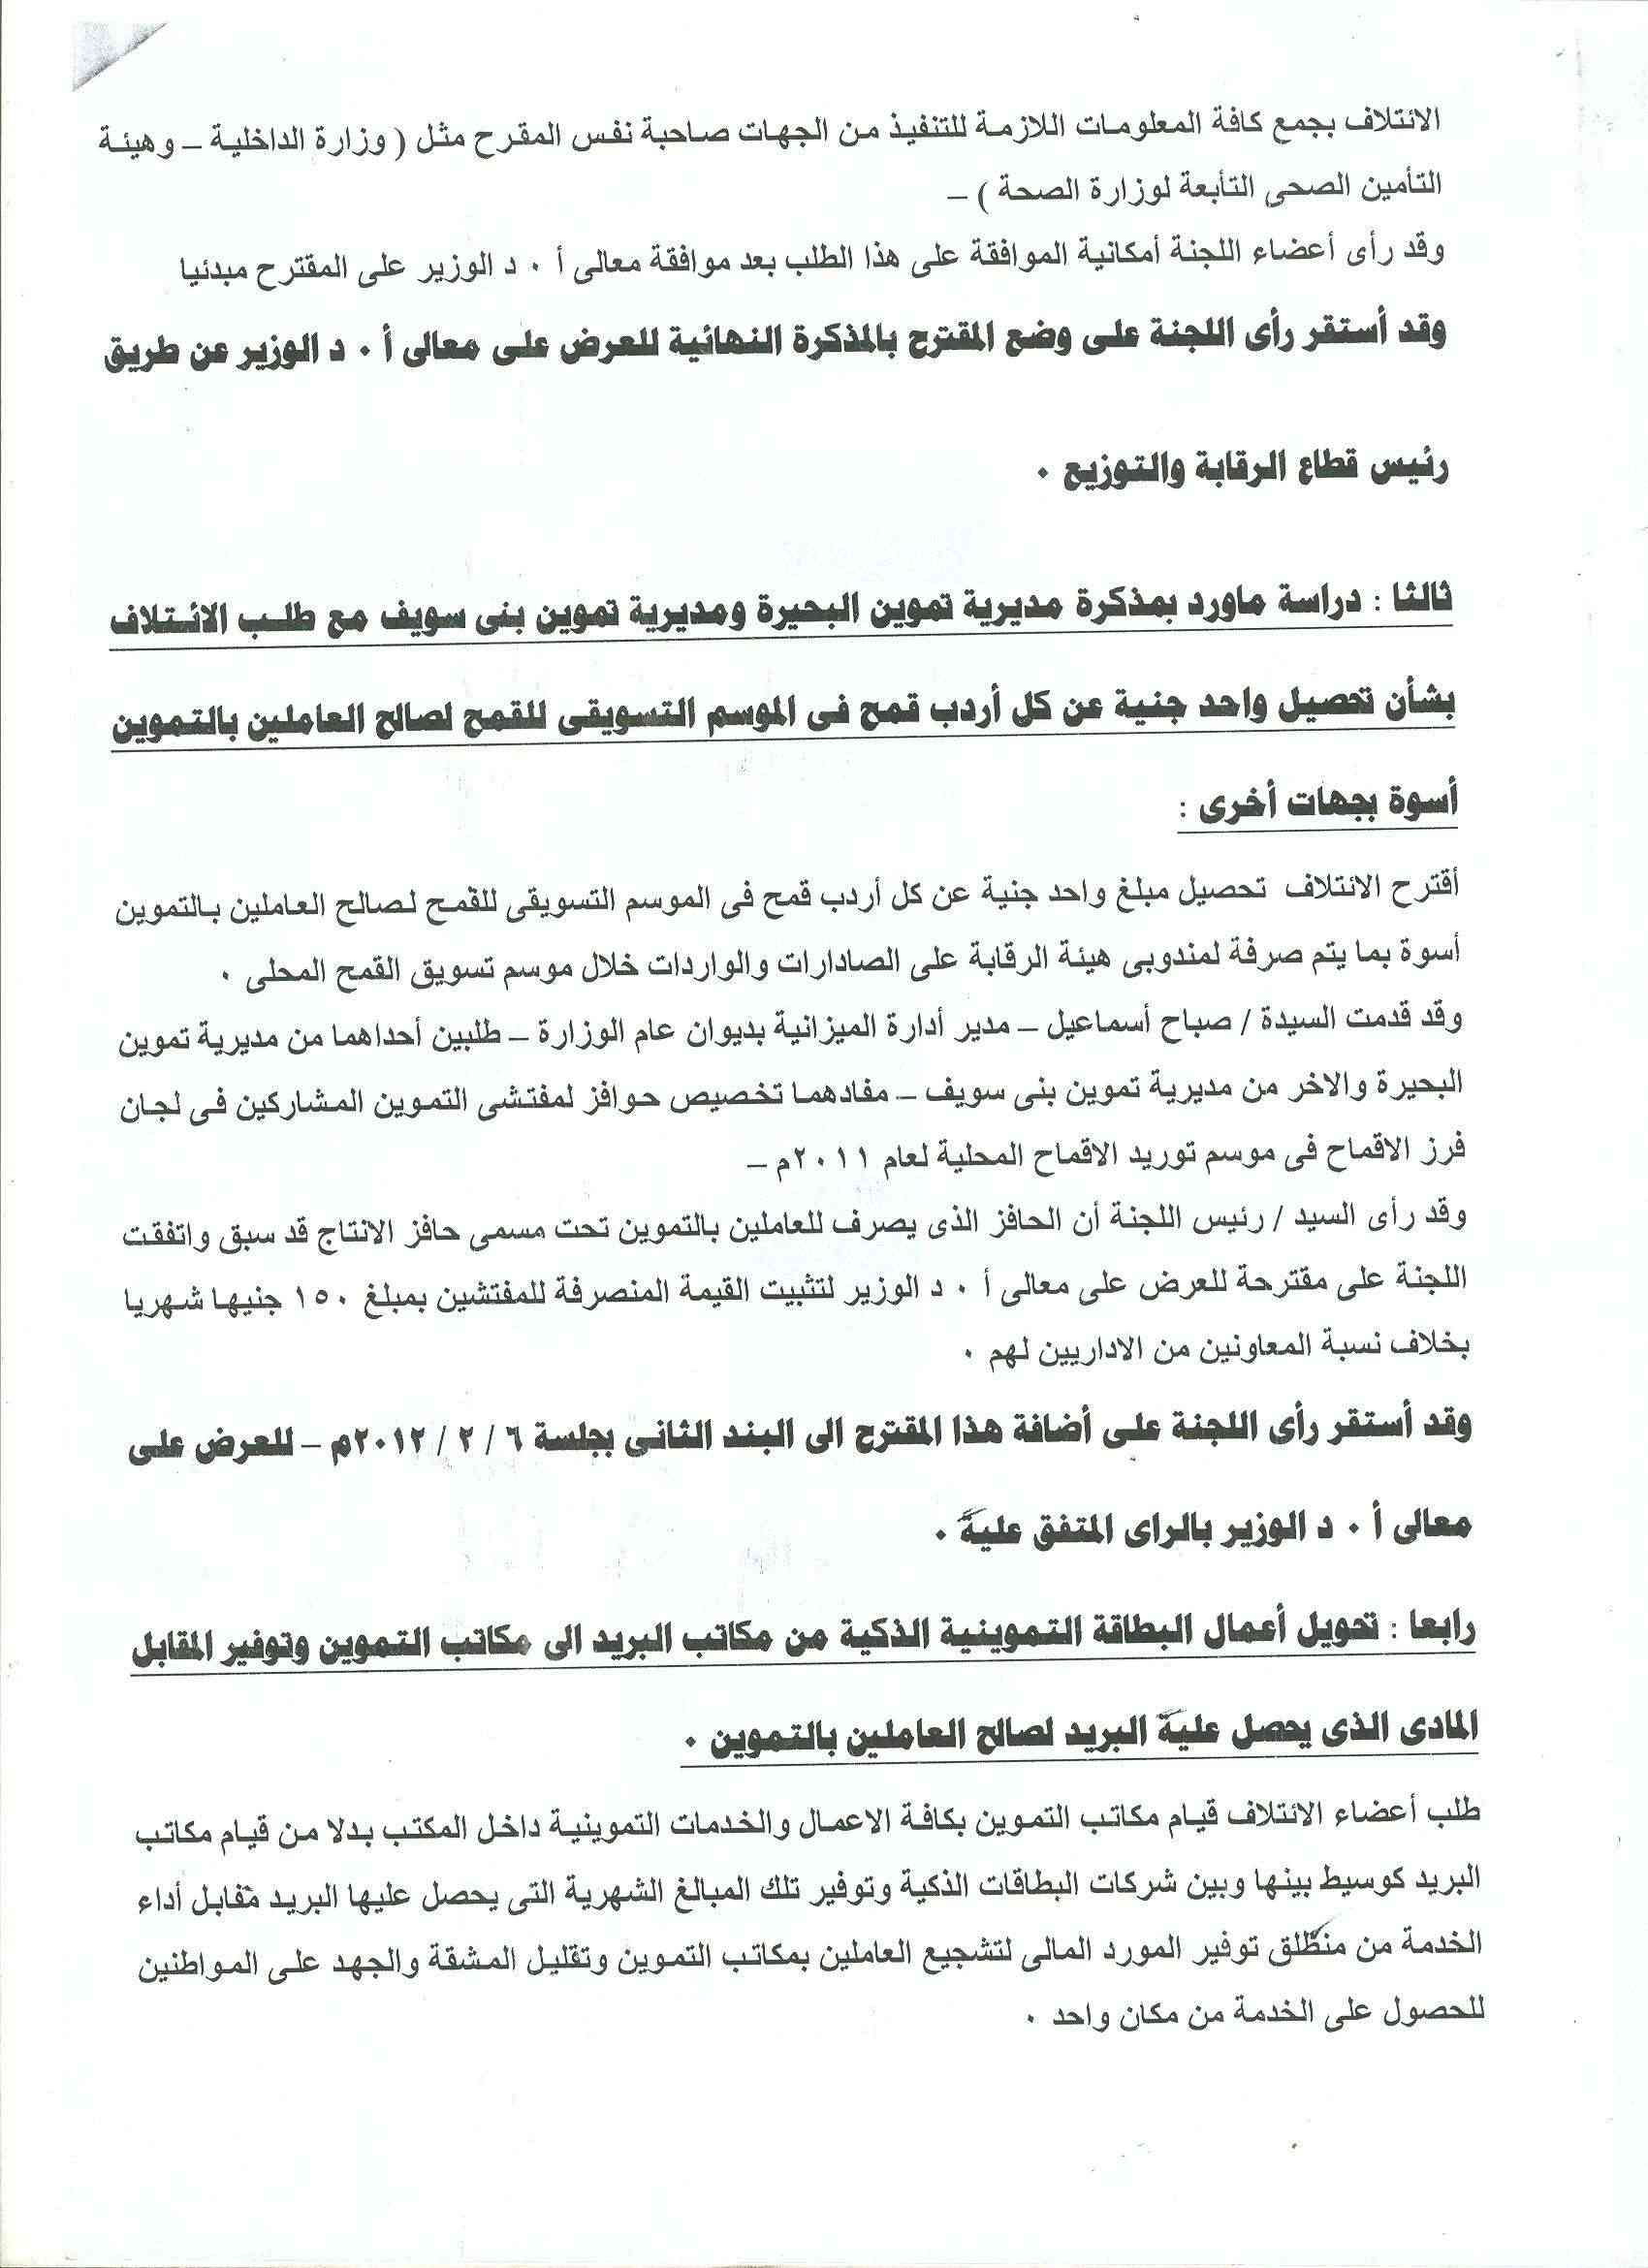 أعمال لجنة الإئتلاف العام للعاملين بتموين مصر بالوزاره خلال شهر فبراير 2012 15-310